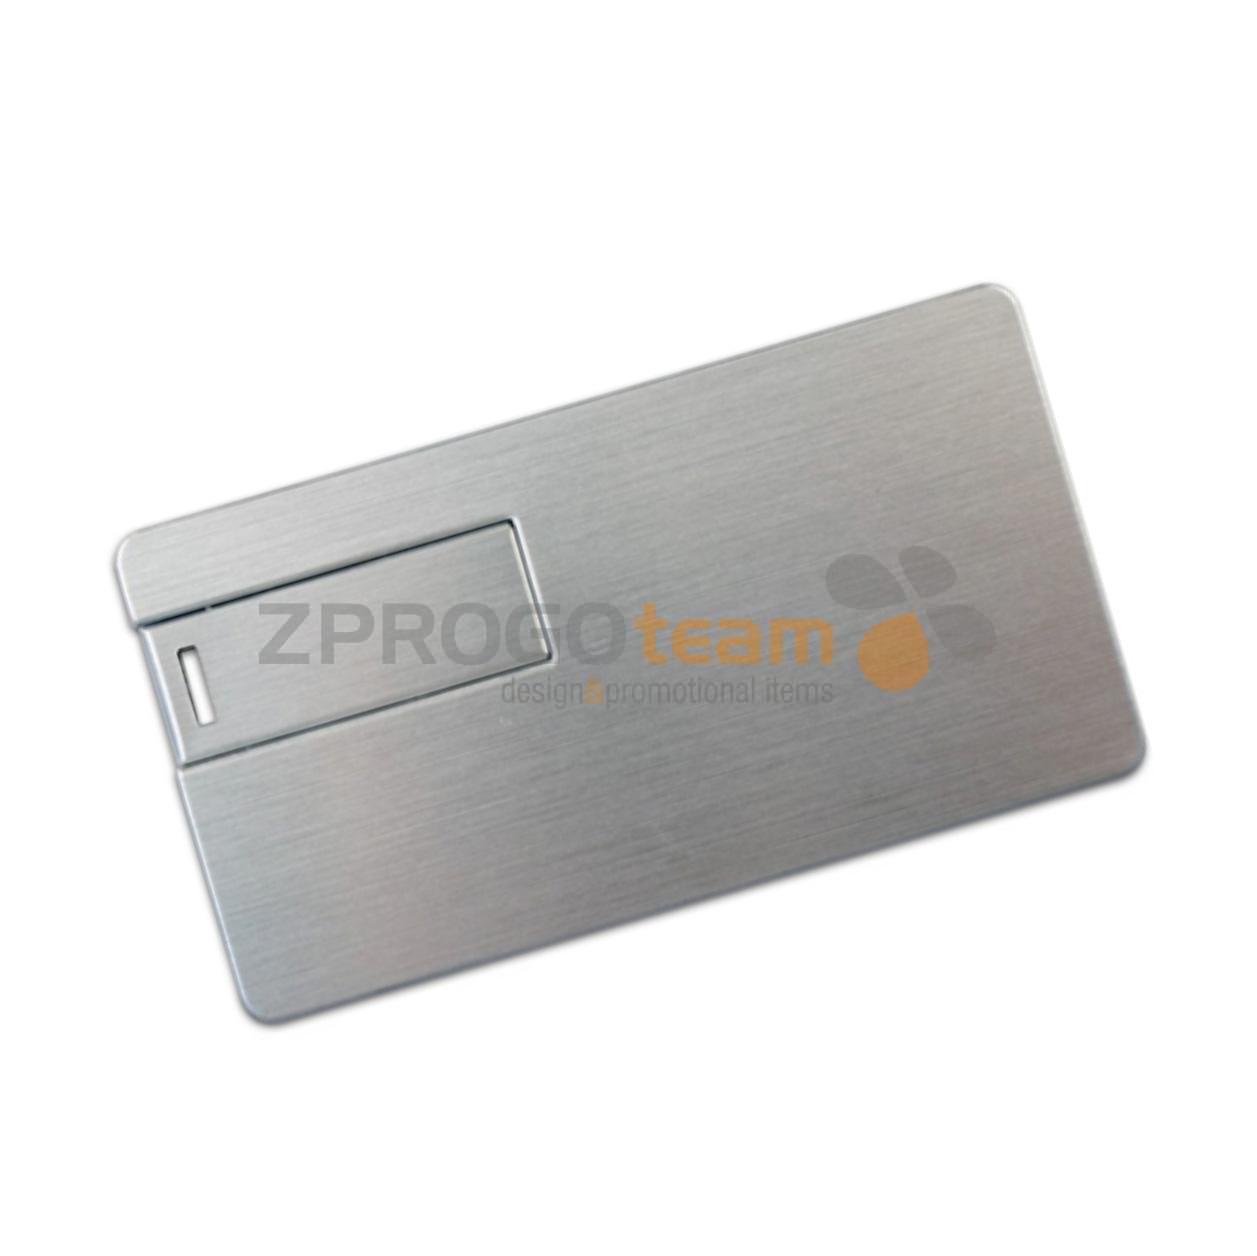 USB kreditní karta 033MCC